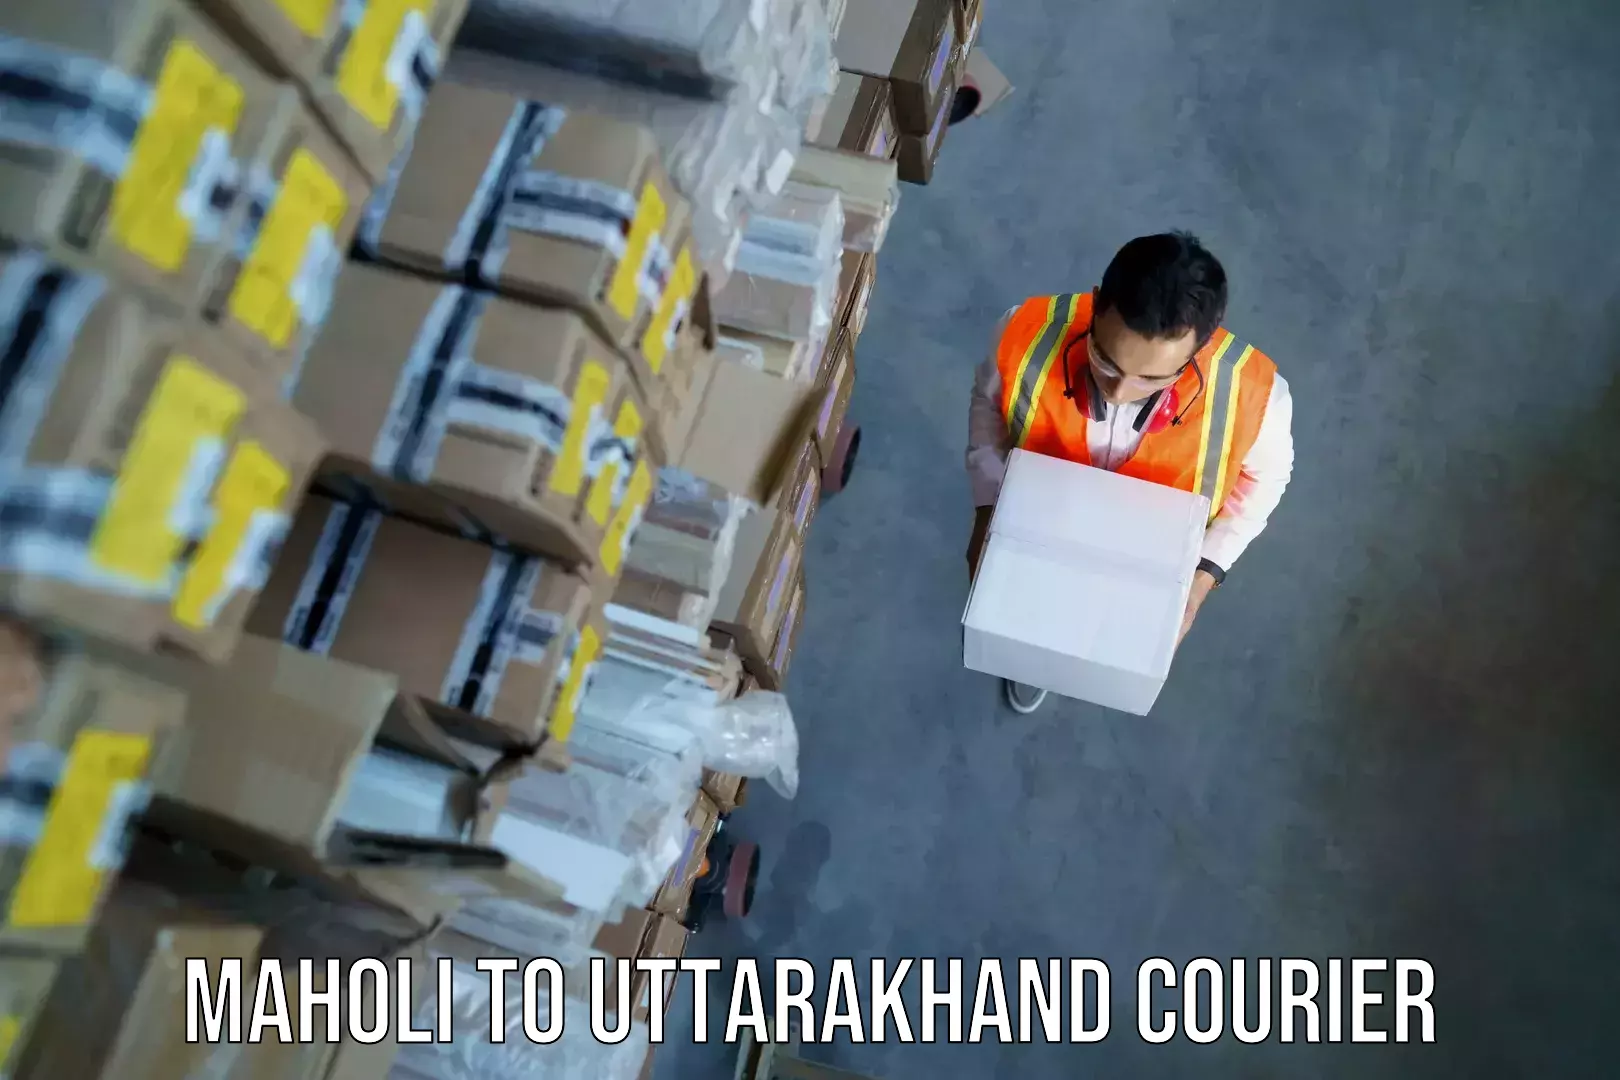 Customized luggage delivery Maholi to Uttarakhand